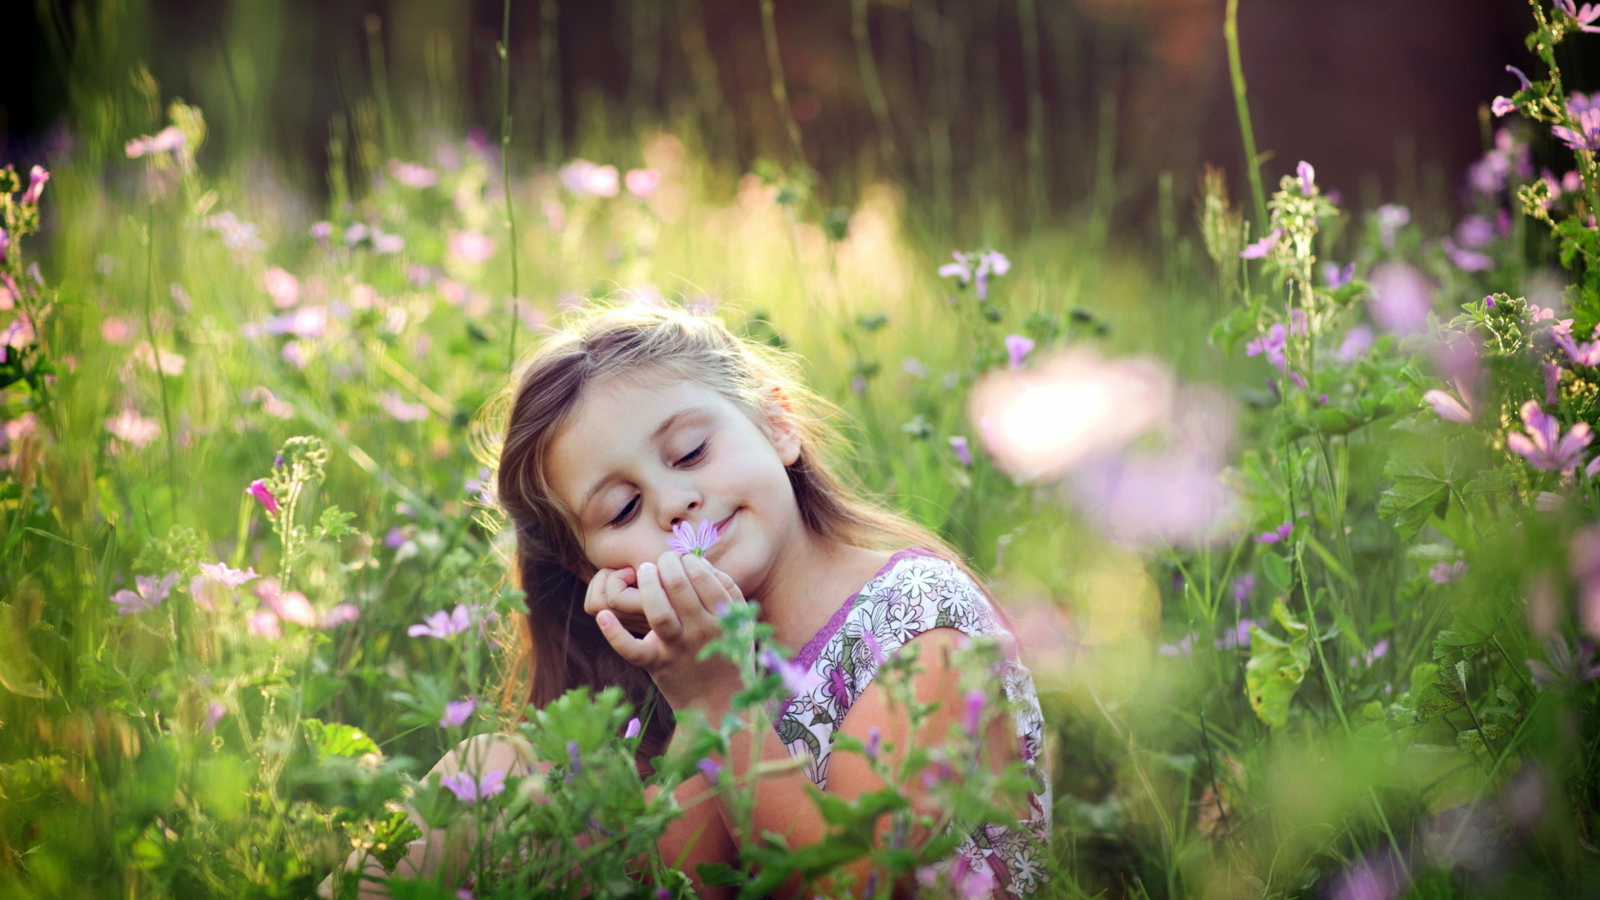 Das Little Girl Enjoying Nature Wallpaper 1600x900